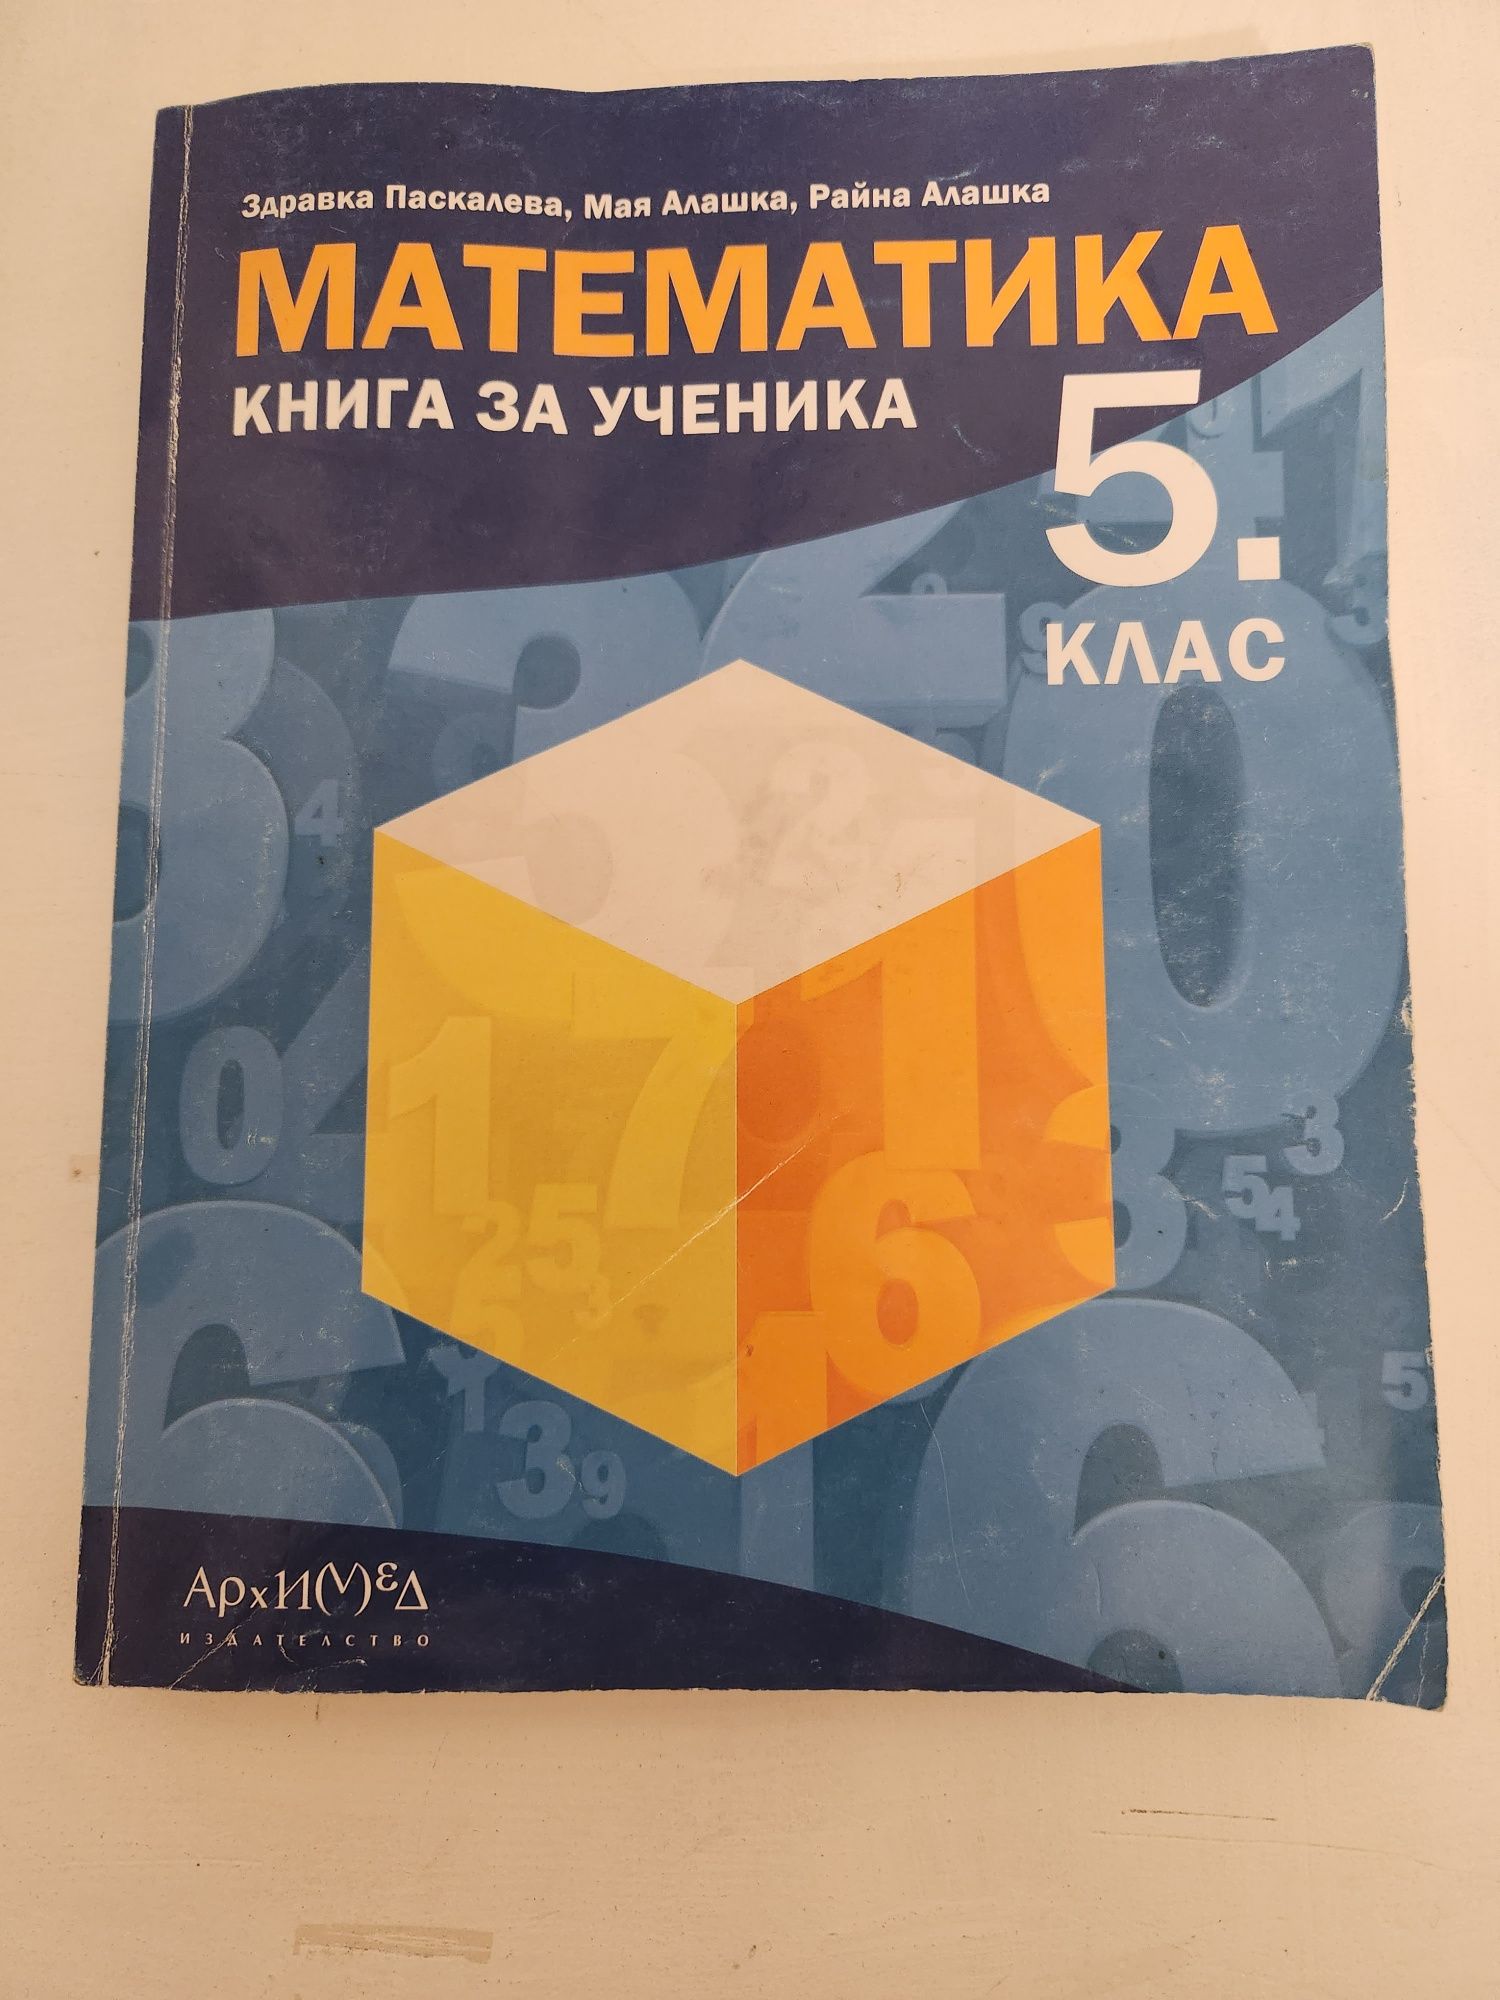 Сборник за ученика по математика за 5 клас